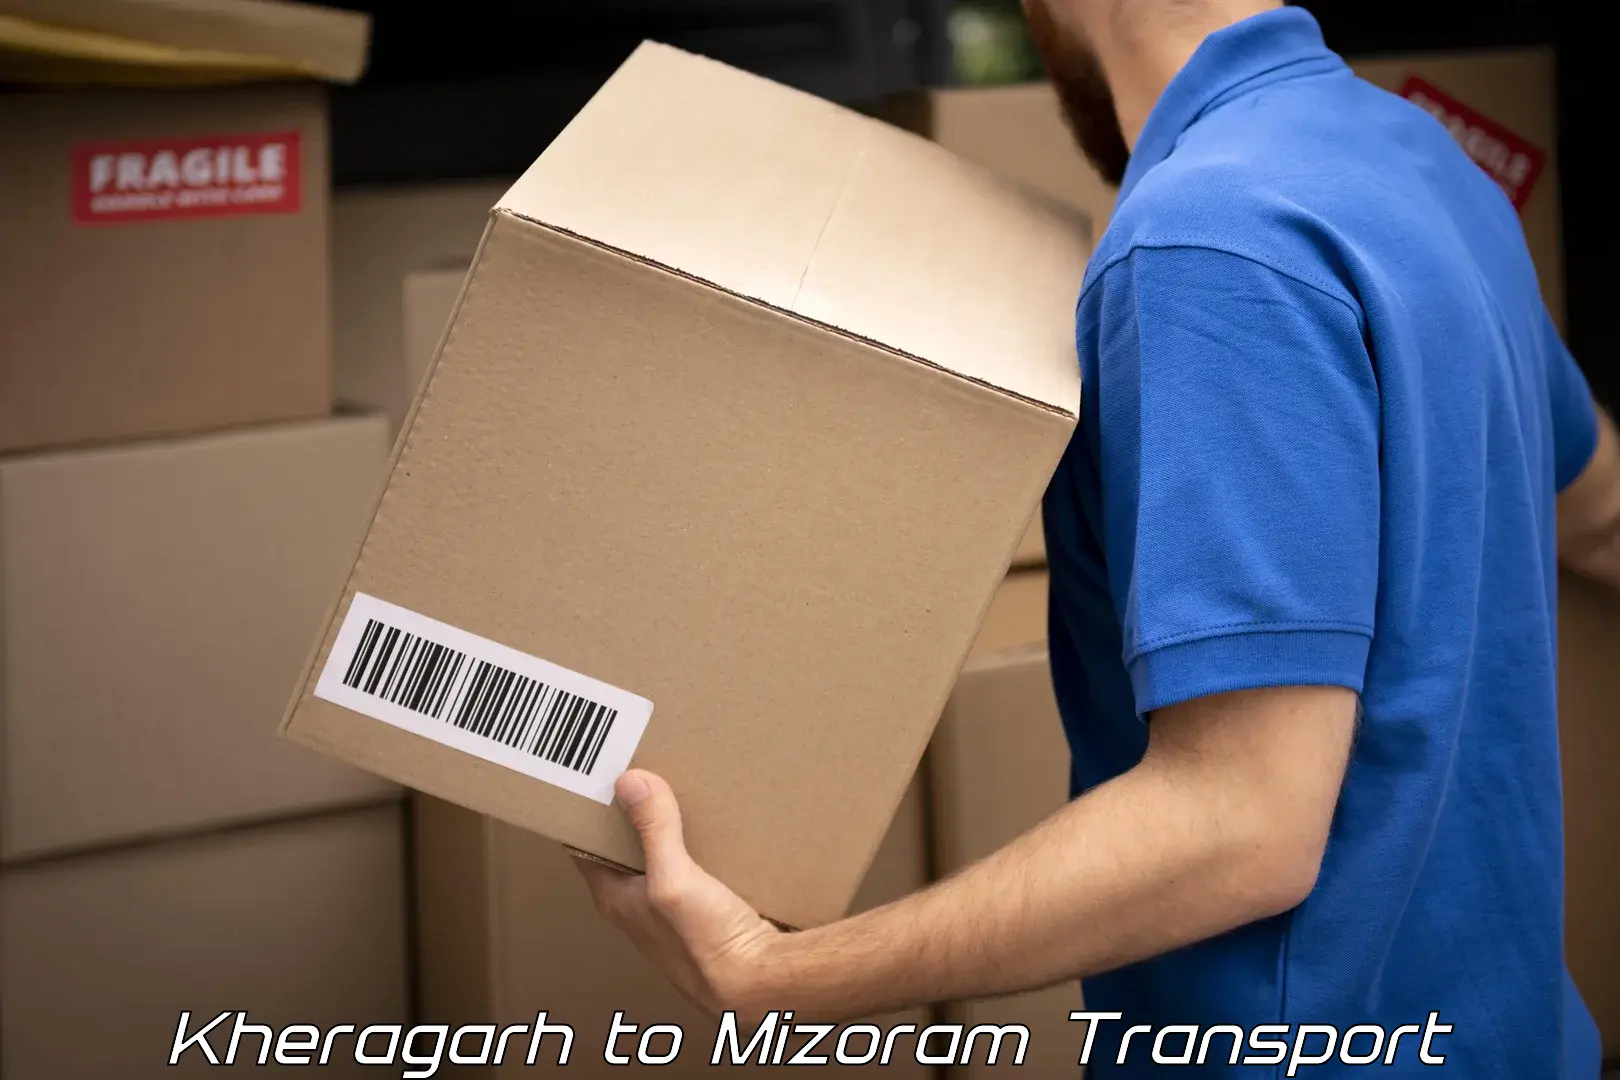 Furniture transport service in Kheragarh to Mizoram